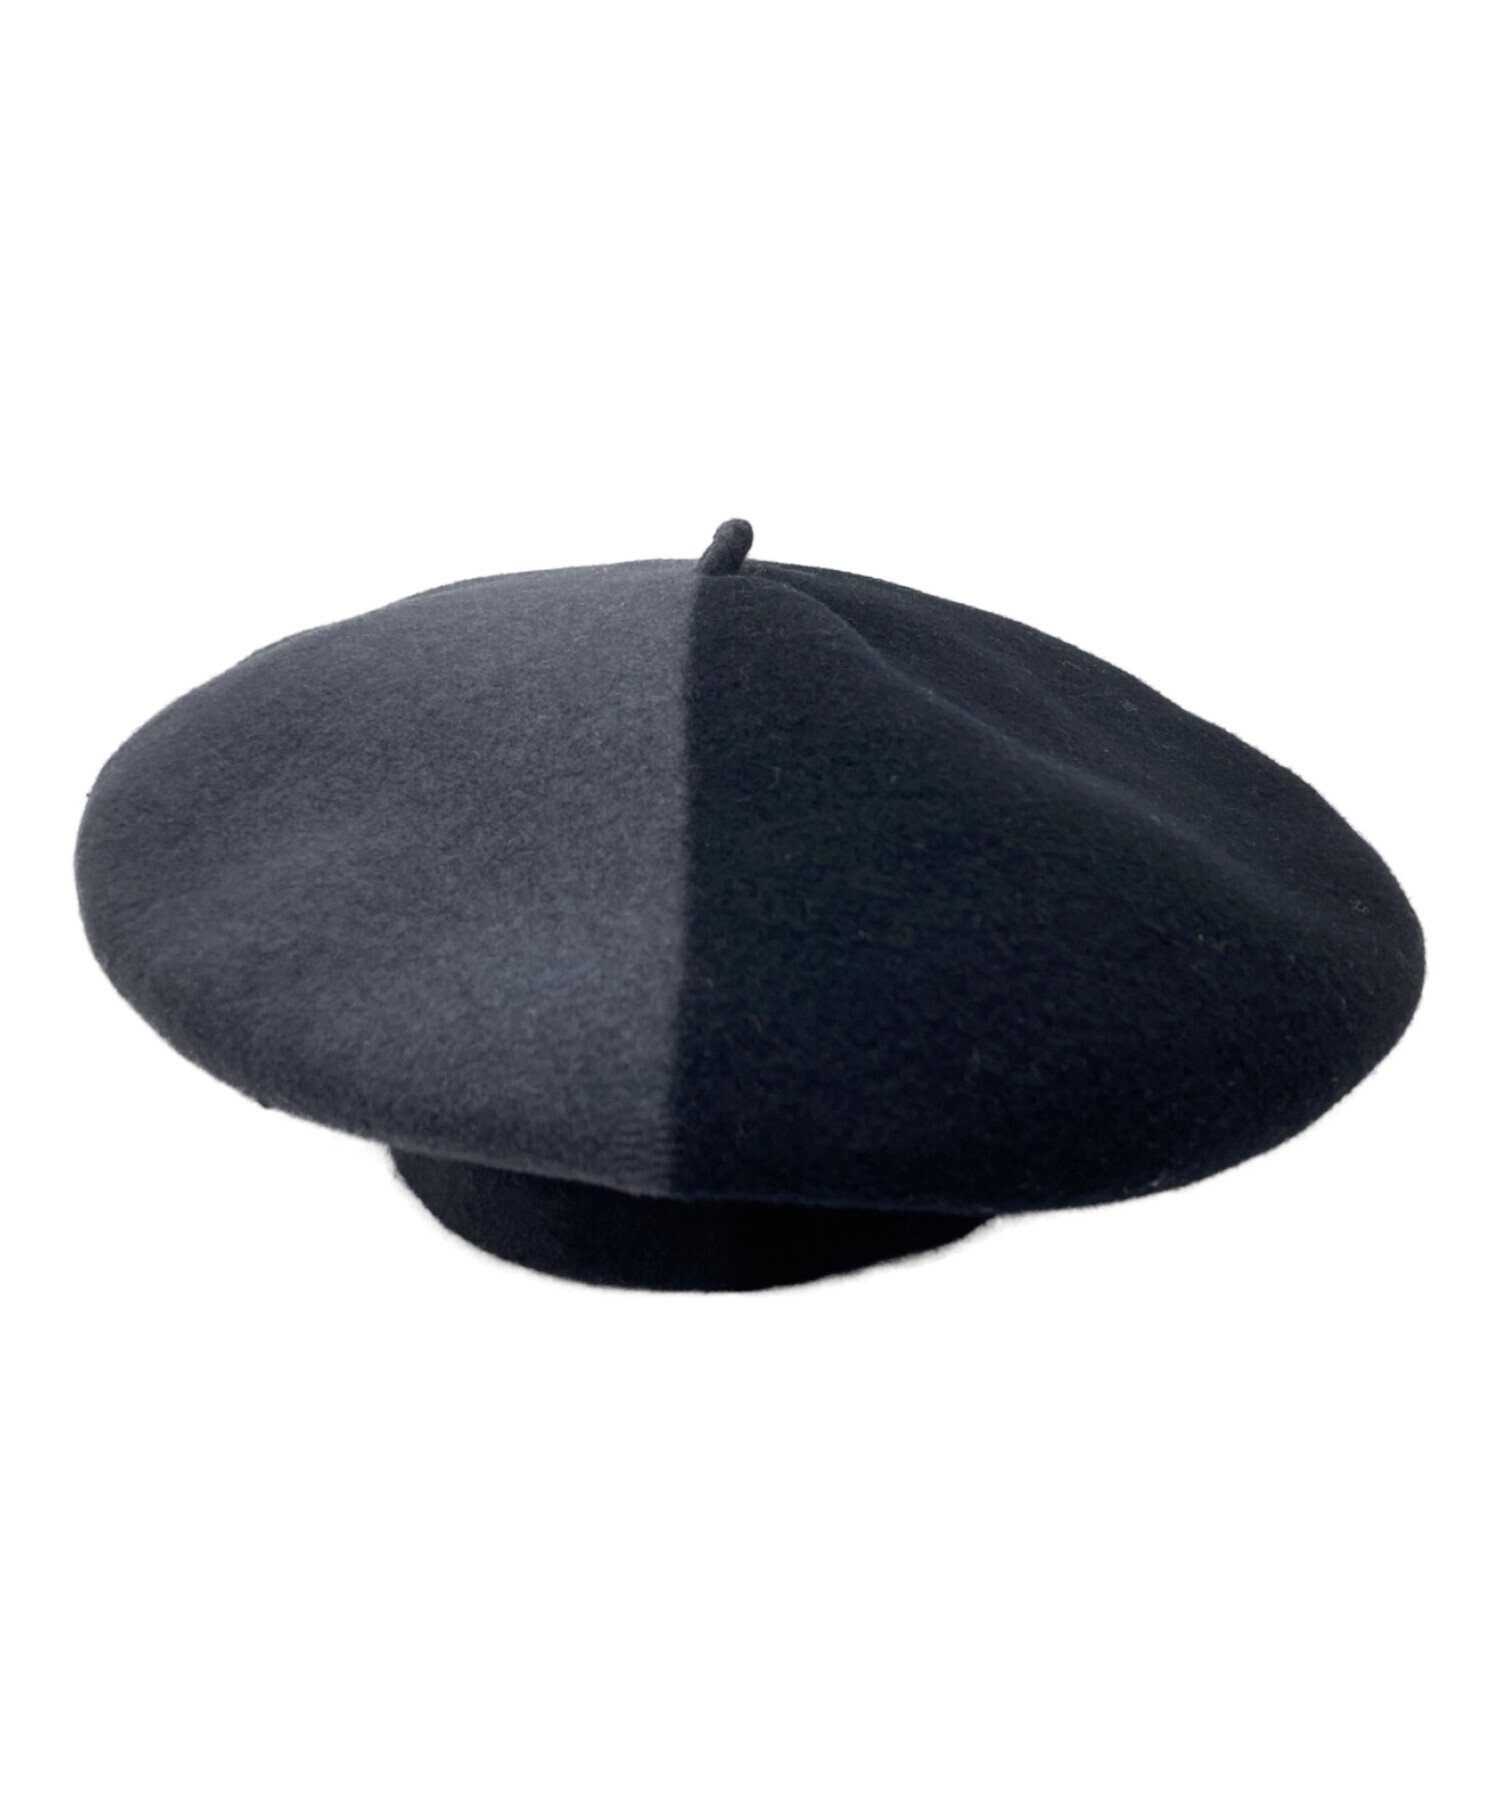 BUENA VISTA (ブエナビスタ) バイカラーベレー帽 ブラック×グレー